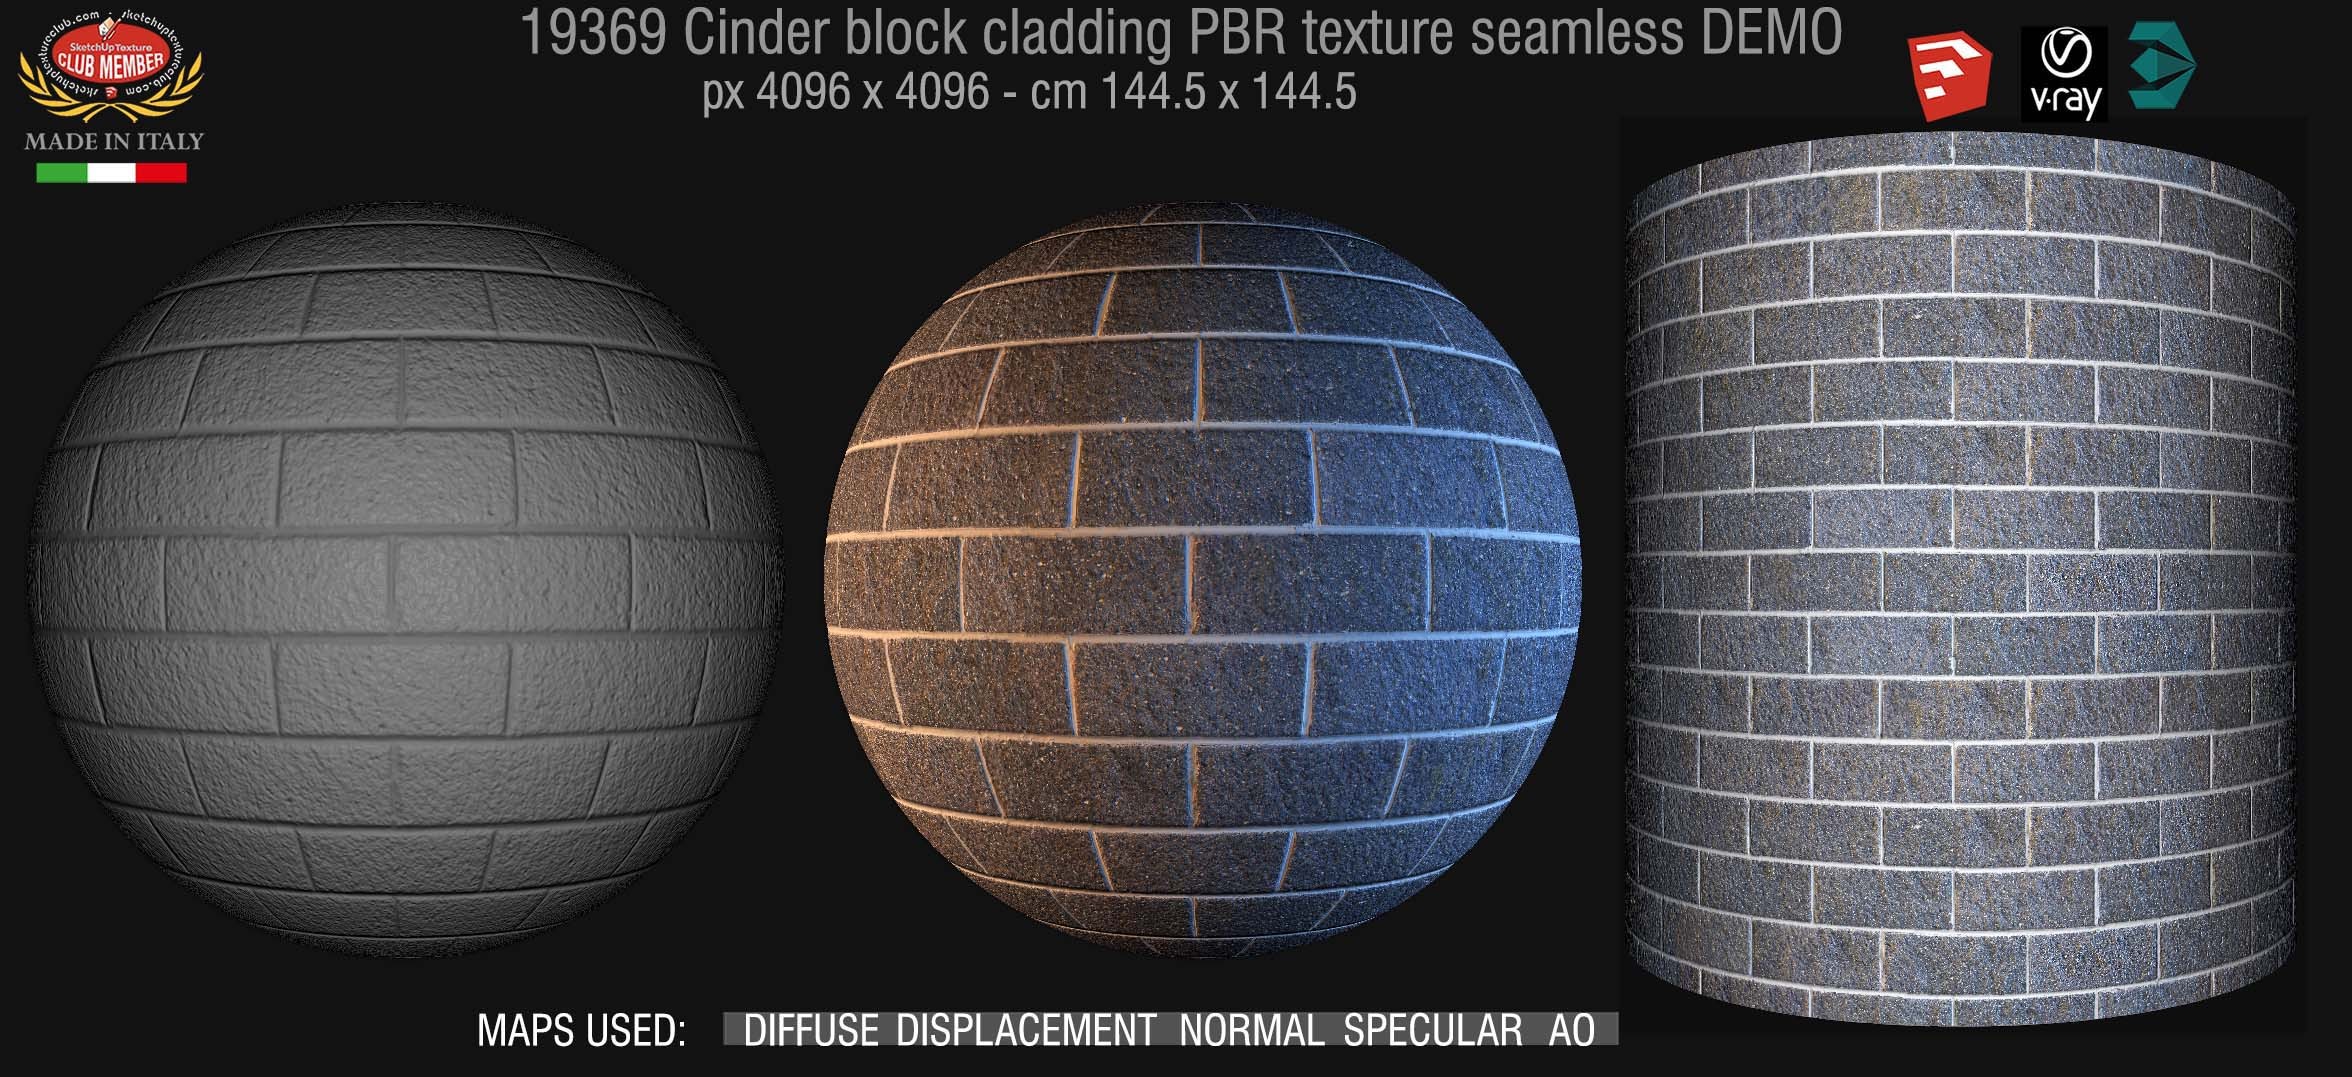 Cinder block cladding PBR texture seamless 19369